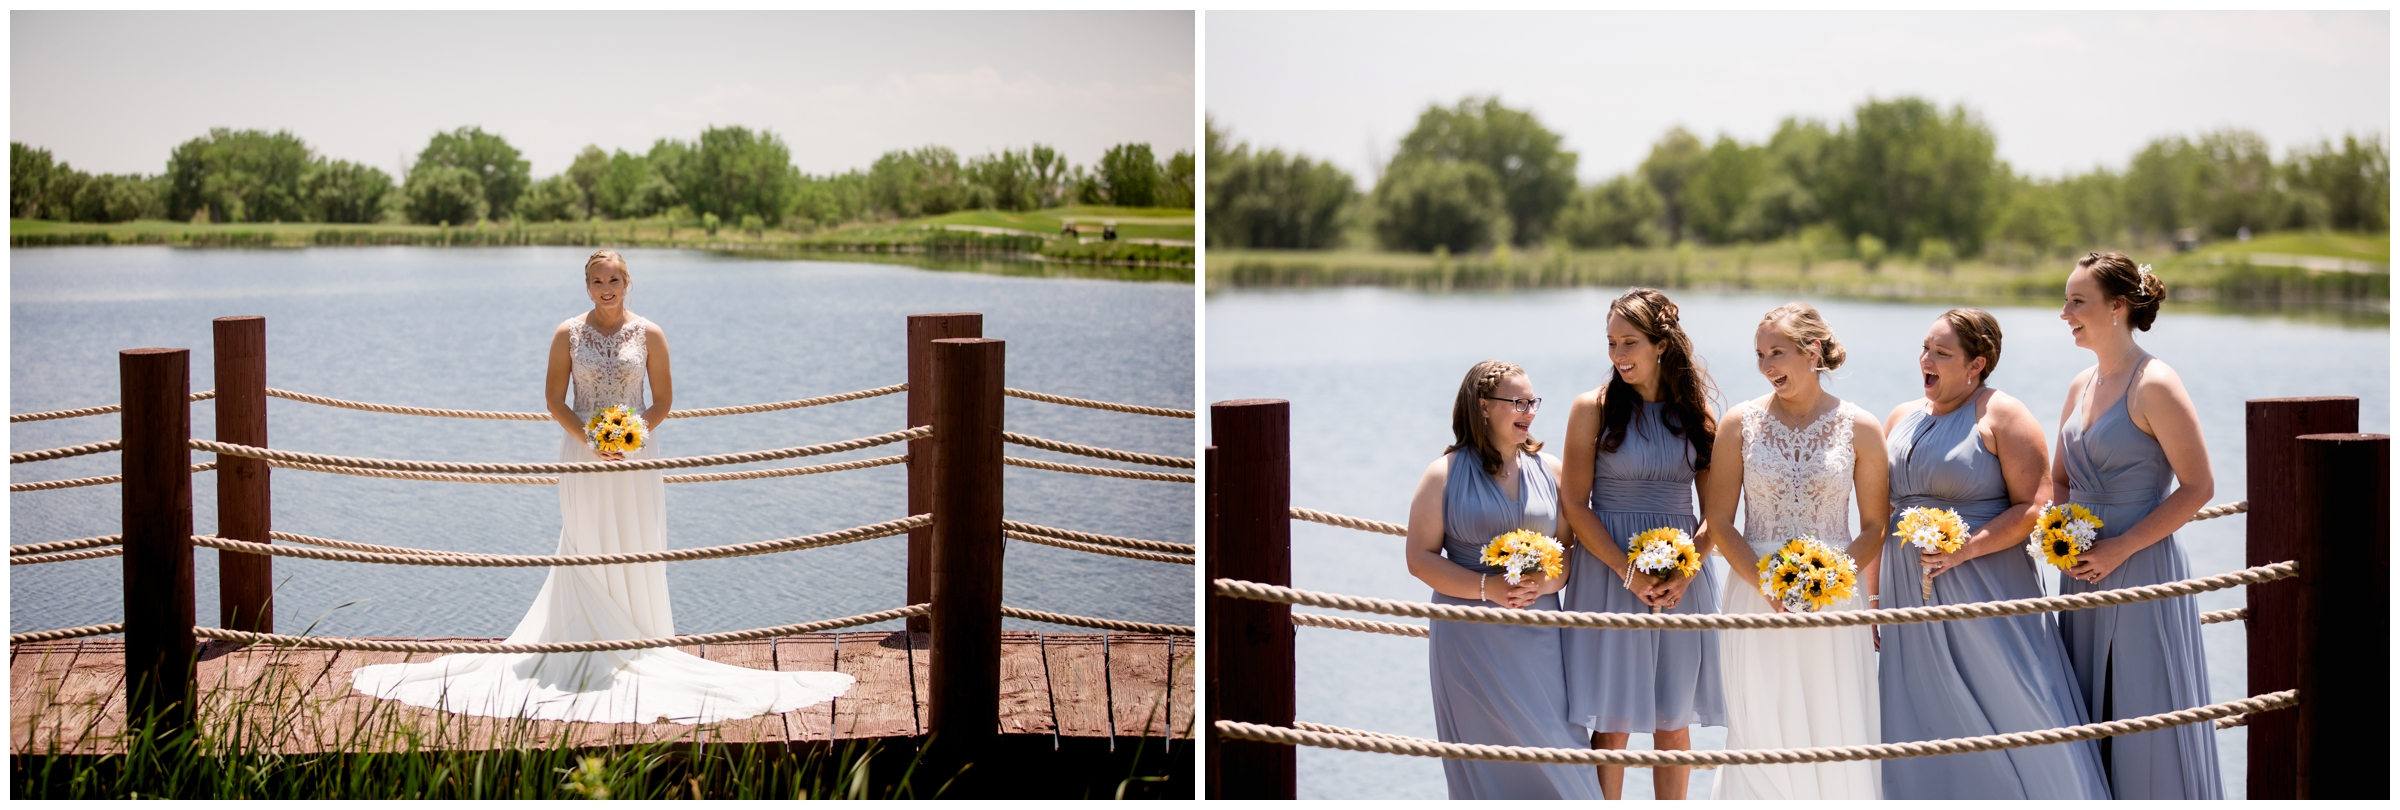 bride posing on dock during Pelican Lakes Colorado wedding photos 